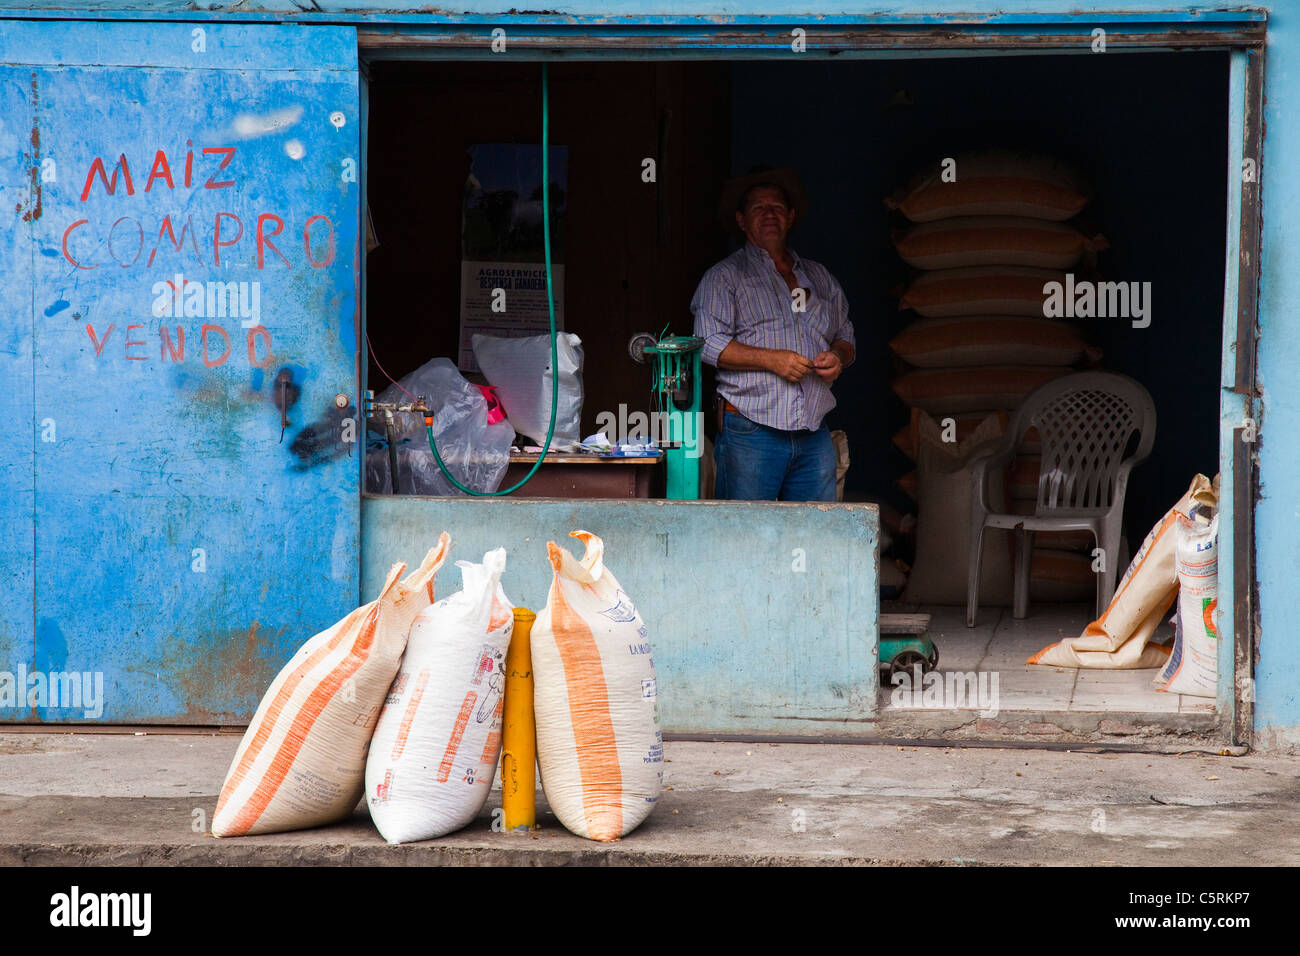 Vente homme sacs de maïs près de San Salvador, El Salvador Banque D'Images